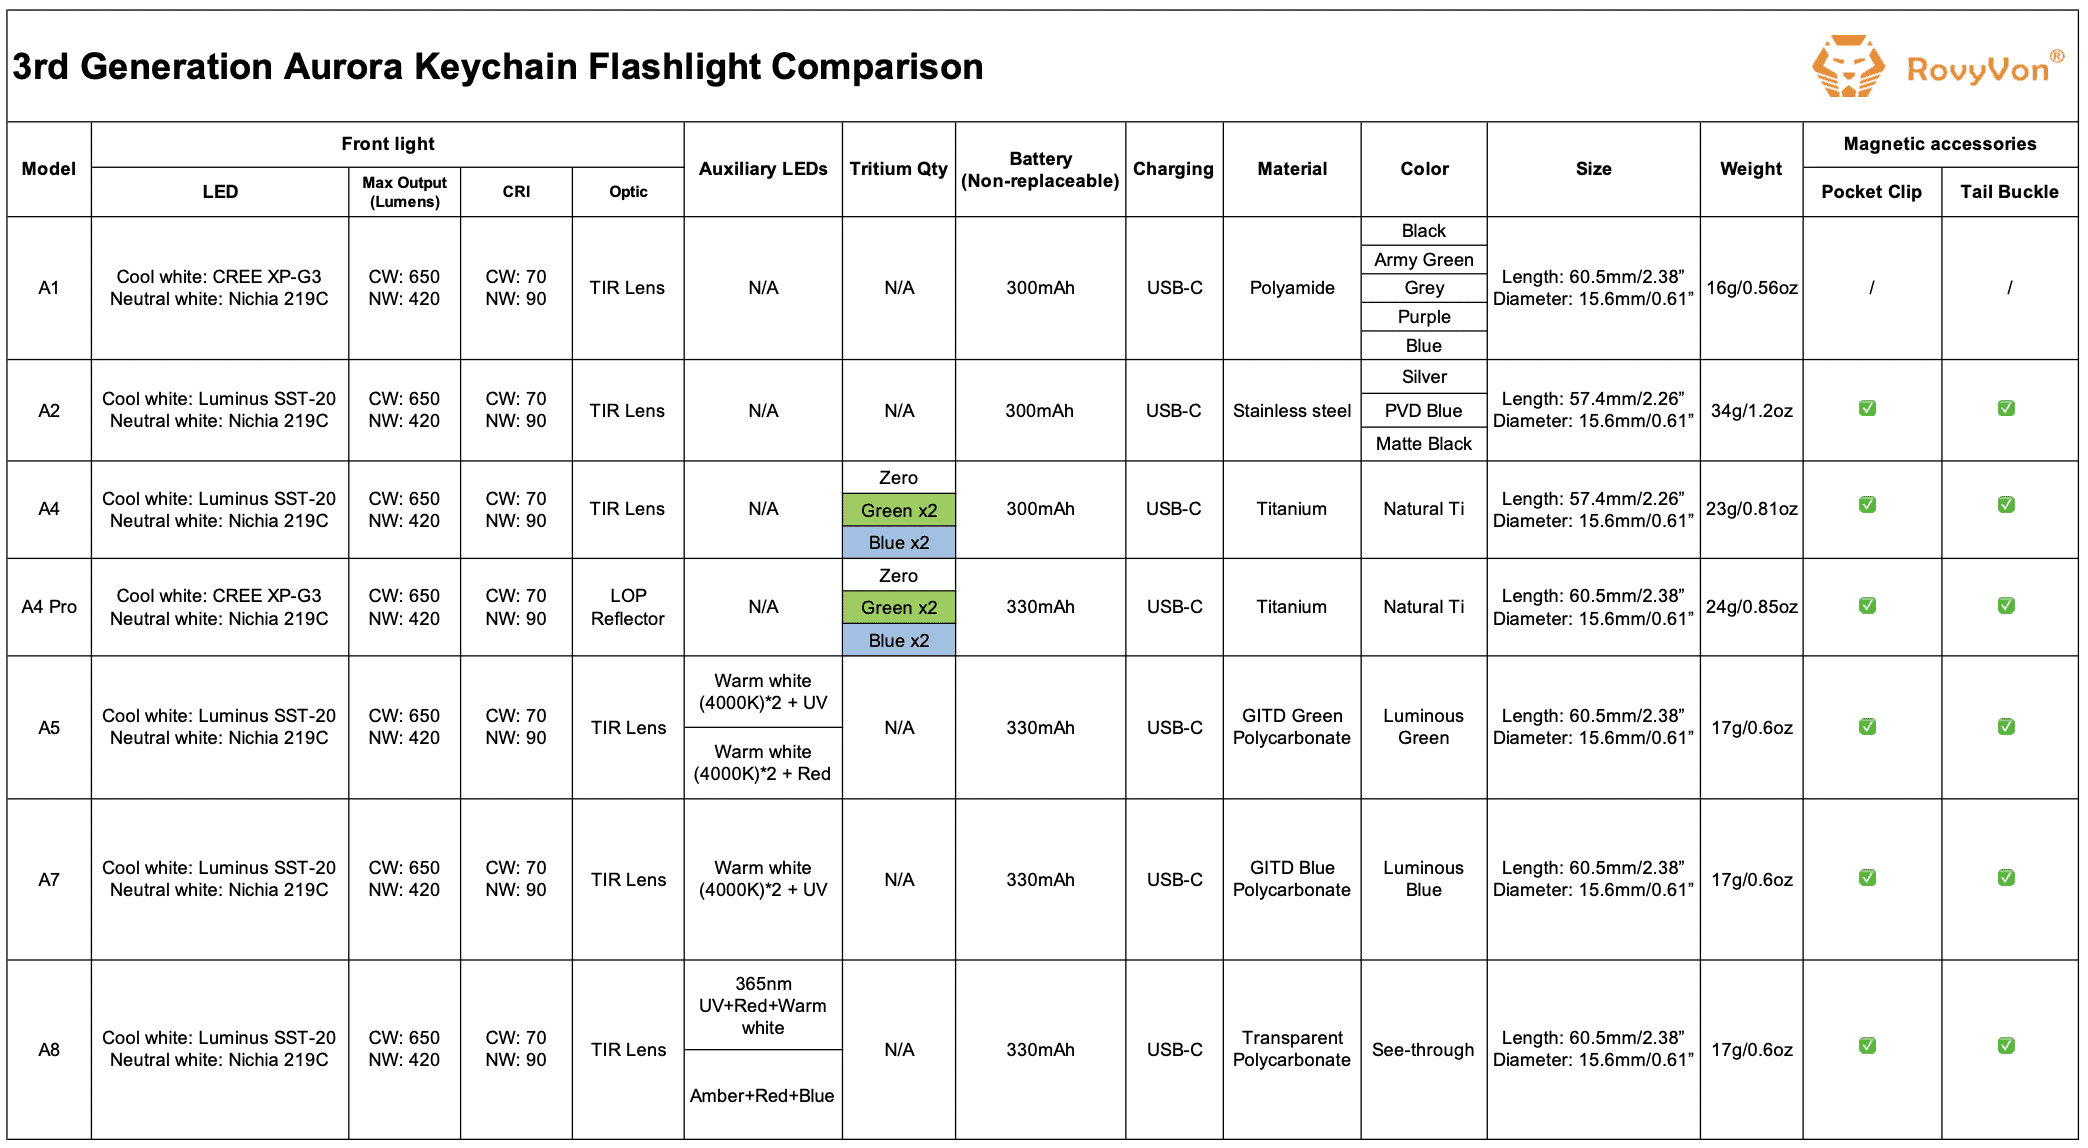 RovyVon comparison table